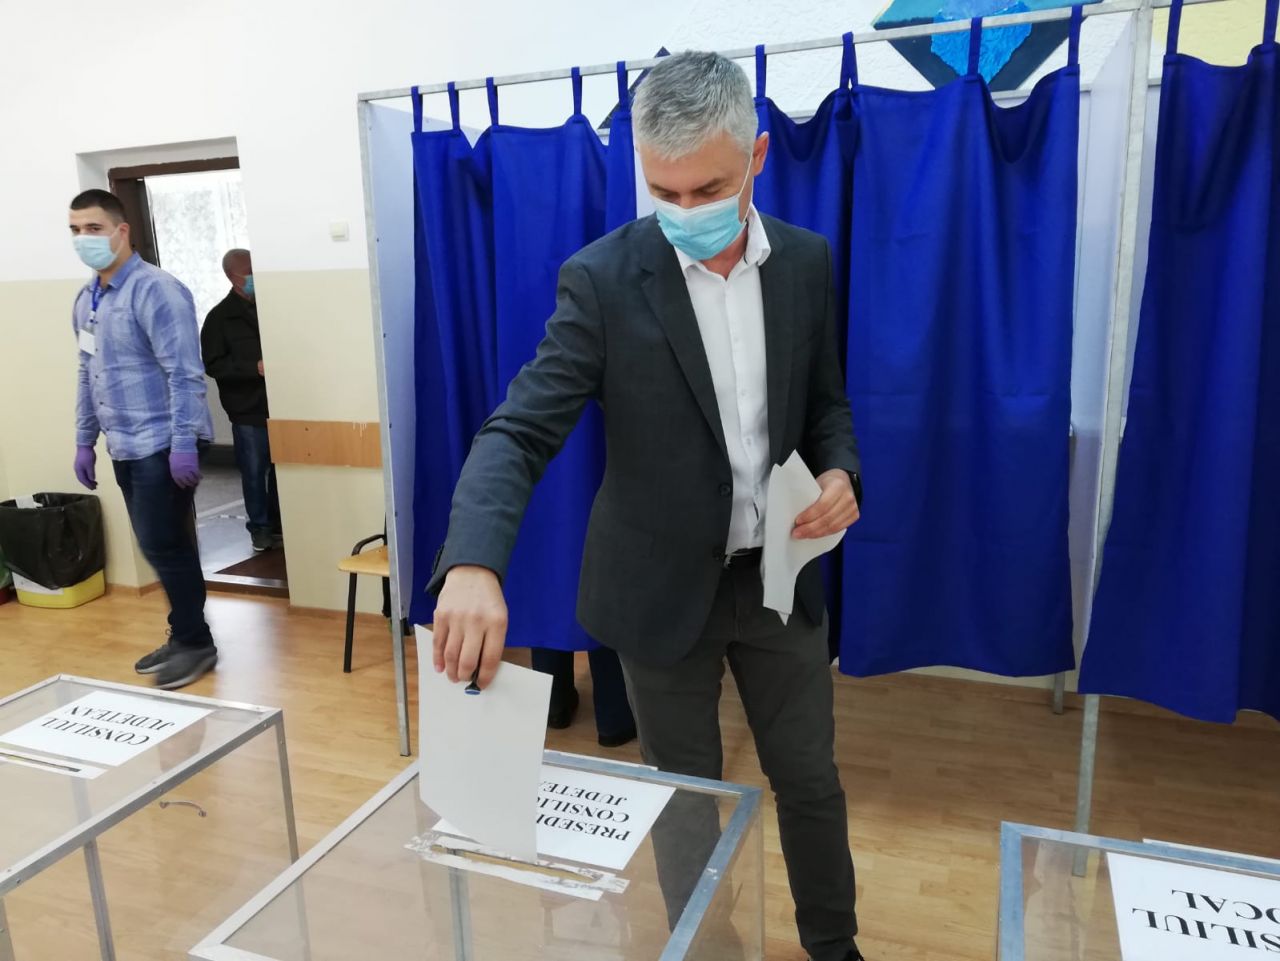 Cătălin Sălăgean, candidatul USR Plus, a votat și el la alegerile locale: